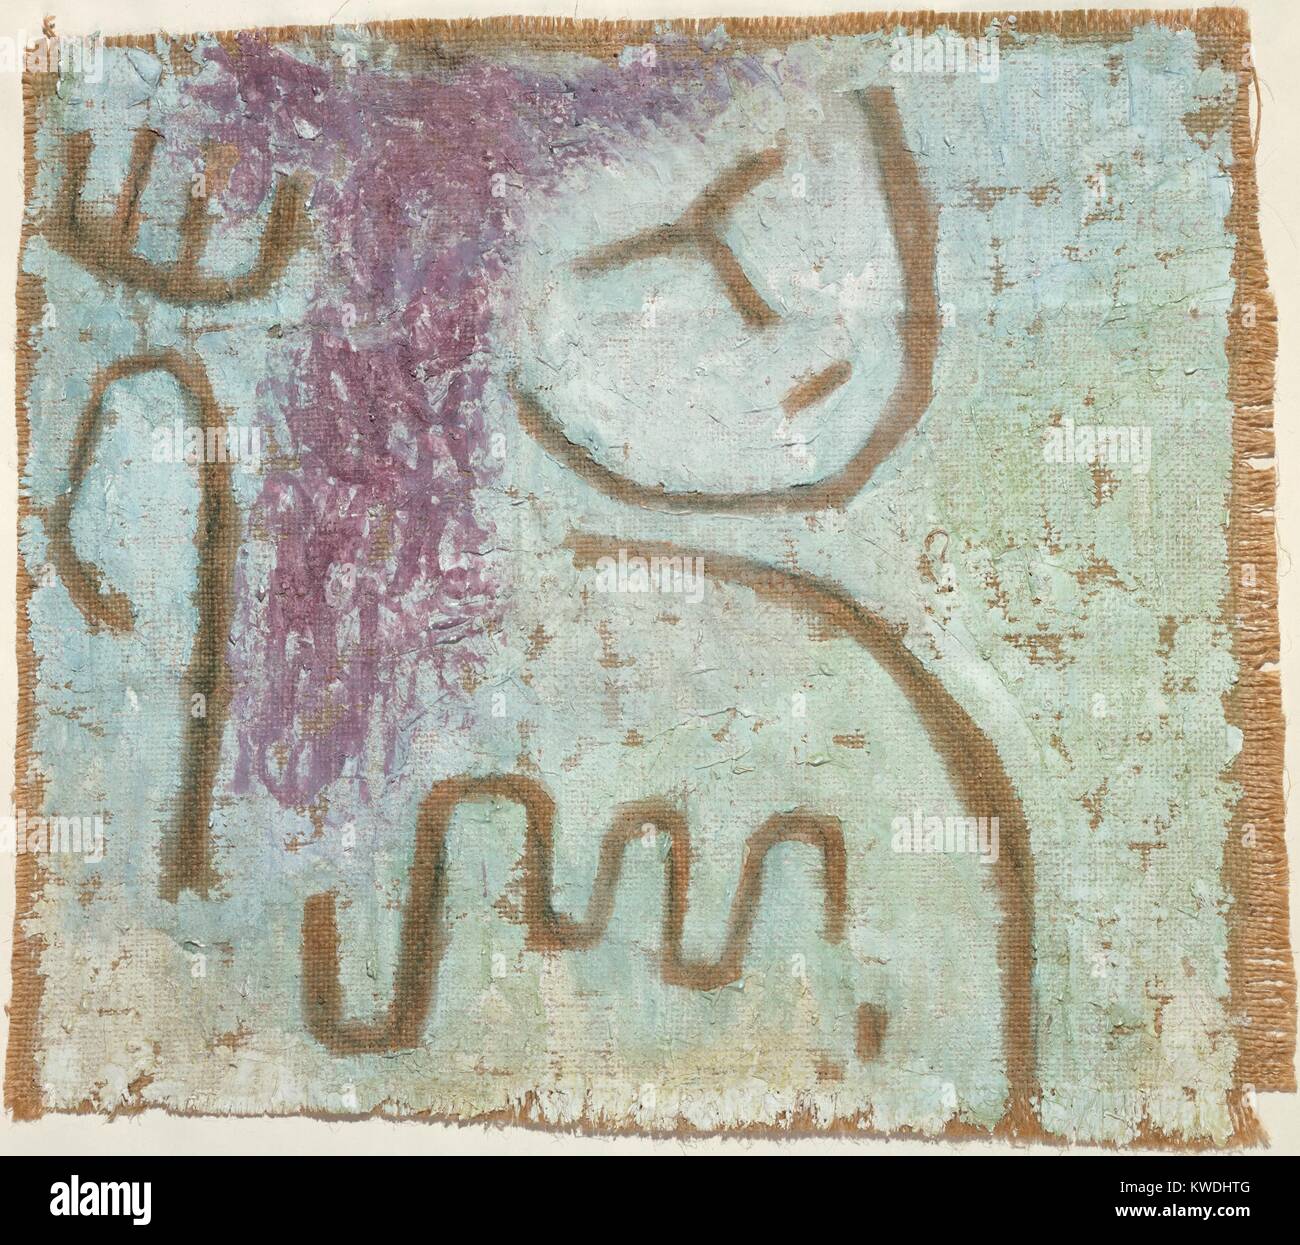 Peu d'espoir, de Paul Klee, 1938, plâtre, peinture suisse et aquarelle sur toile de jute. À la fin des années 1930, l'œuvre devint Klees pessimistes, faisant écho à son destin personnel et la situation politique. La peinture sur toile de jute simule la détérioration physique (BSLOC 2017 7 30) Banque D'Images